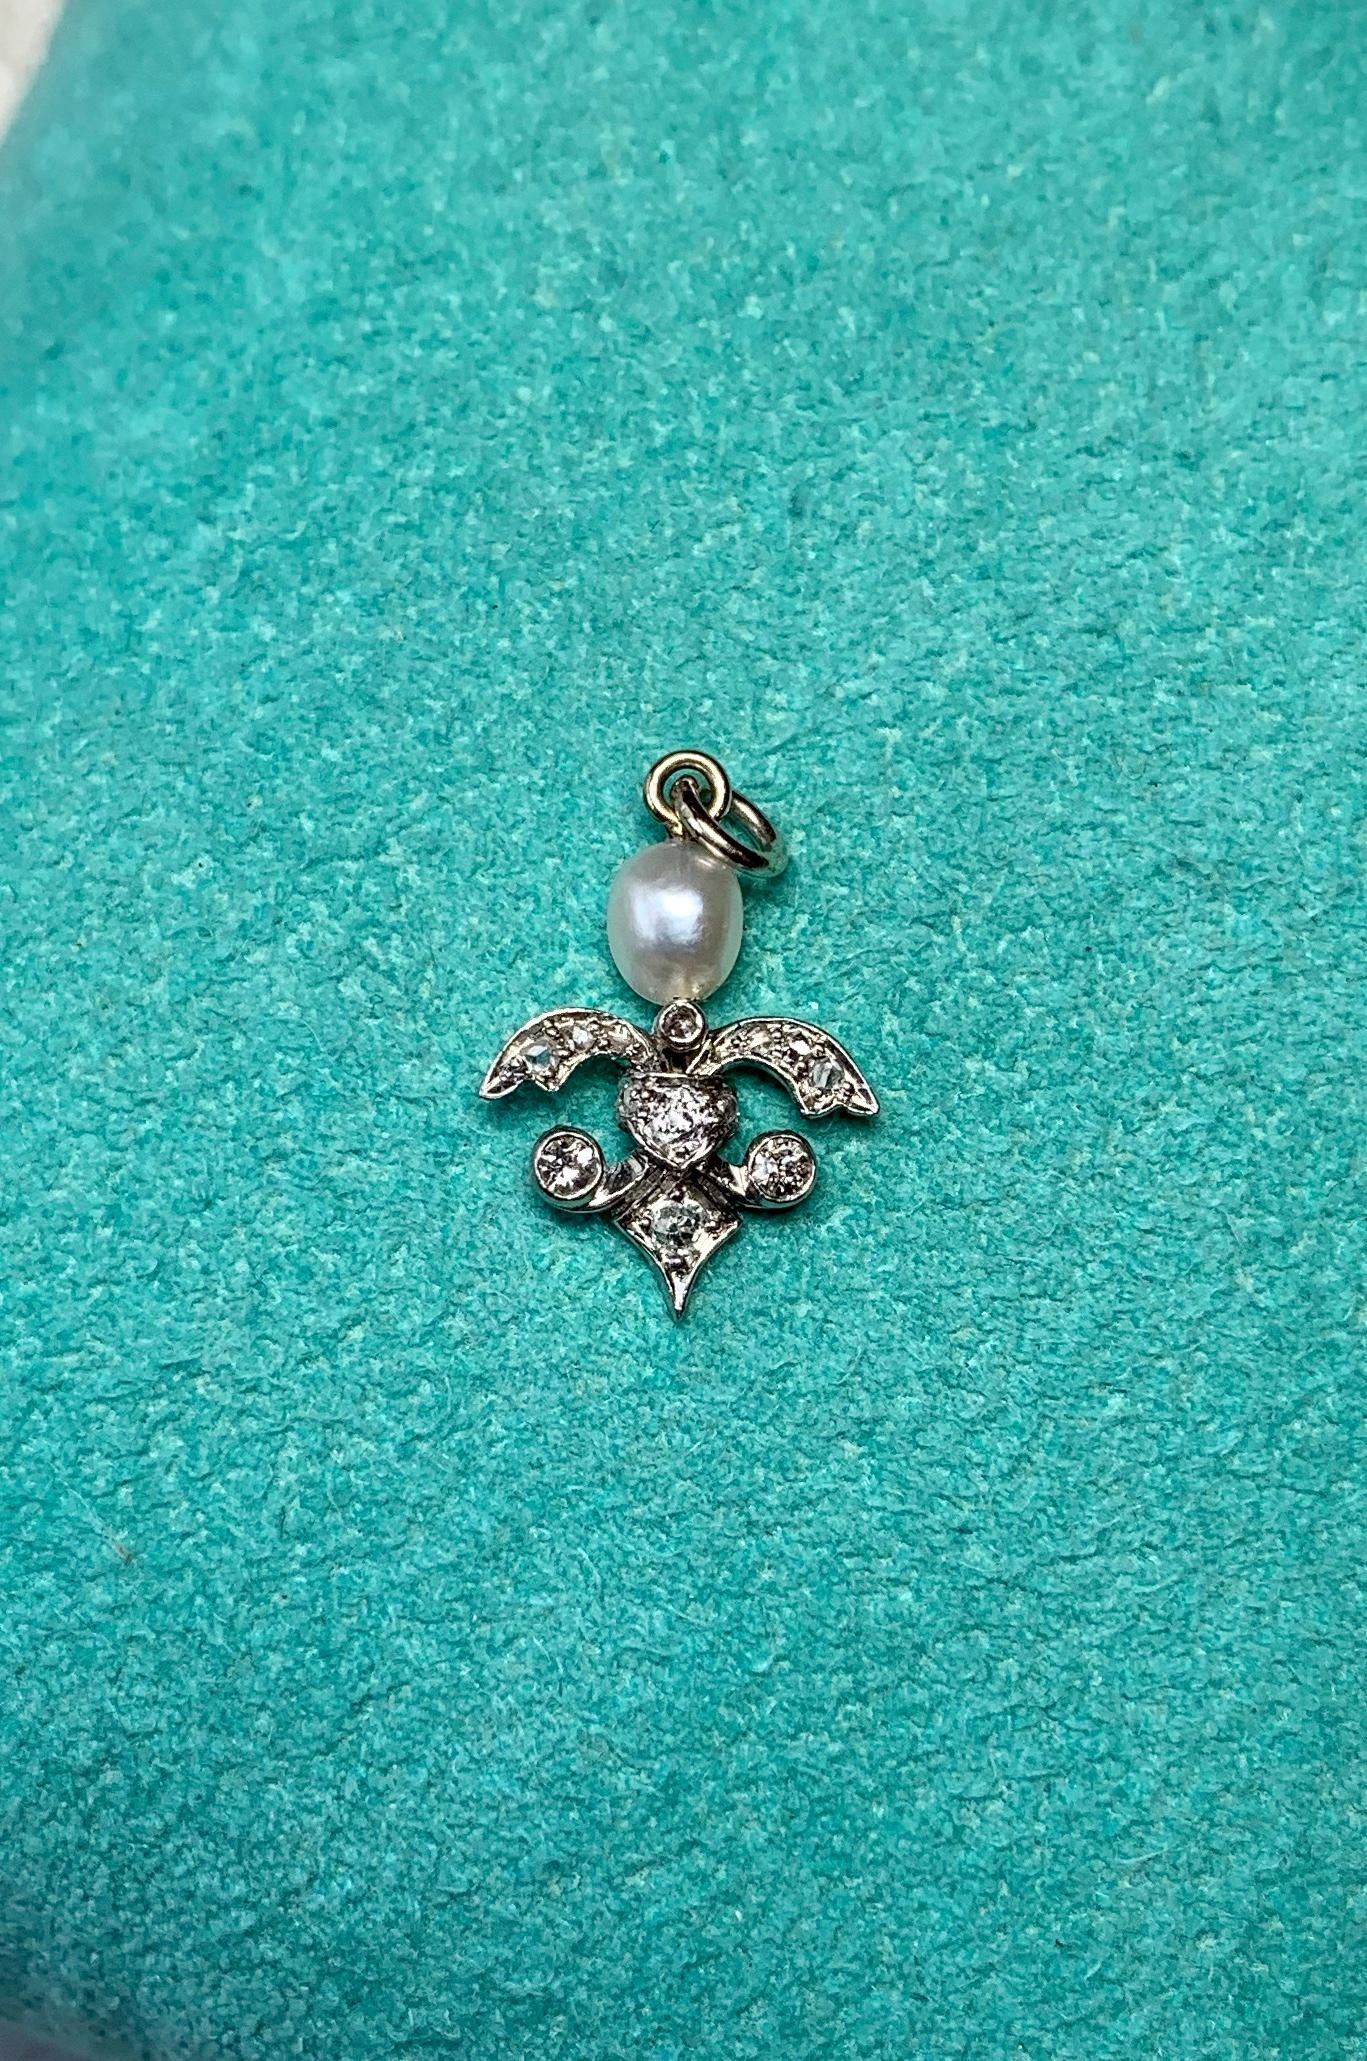 Women's Antique Rose Cut Diamond Pearl Pendant Necklace Art Deco 14 Karat White Gold